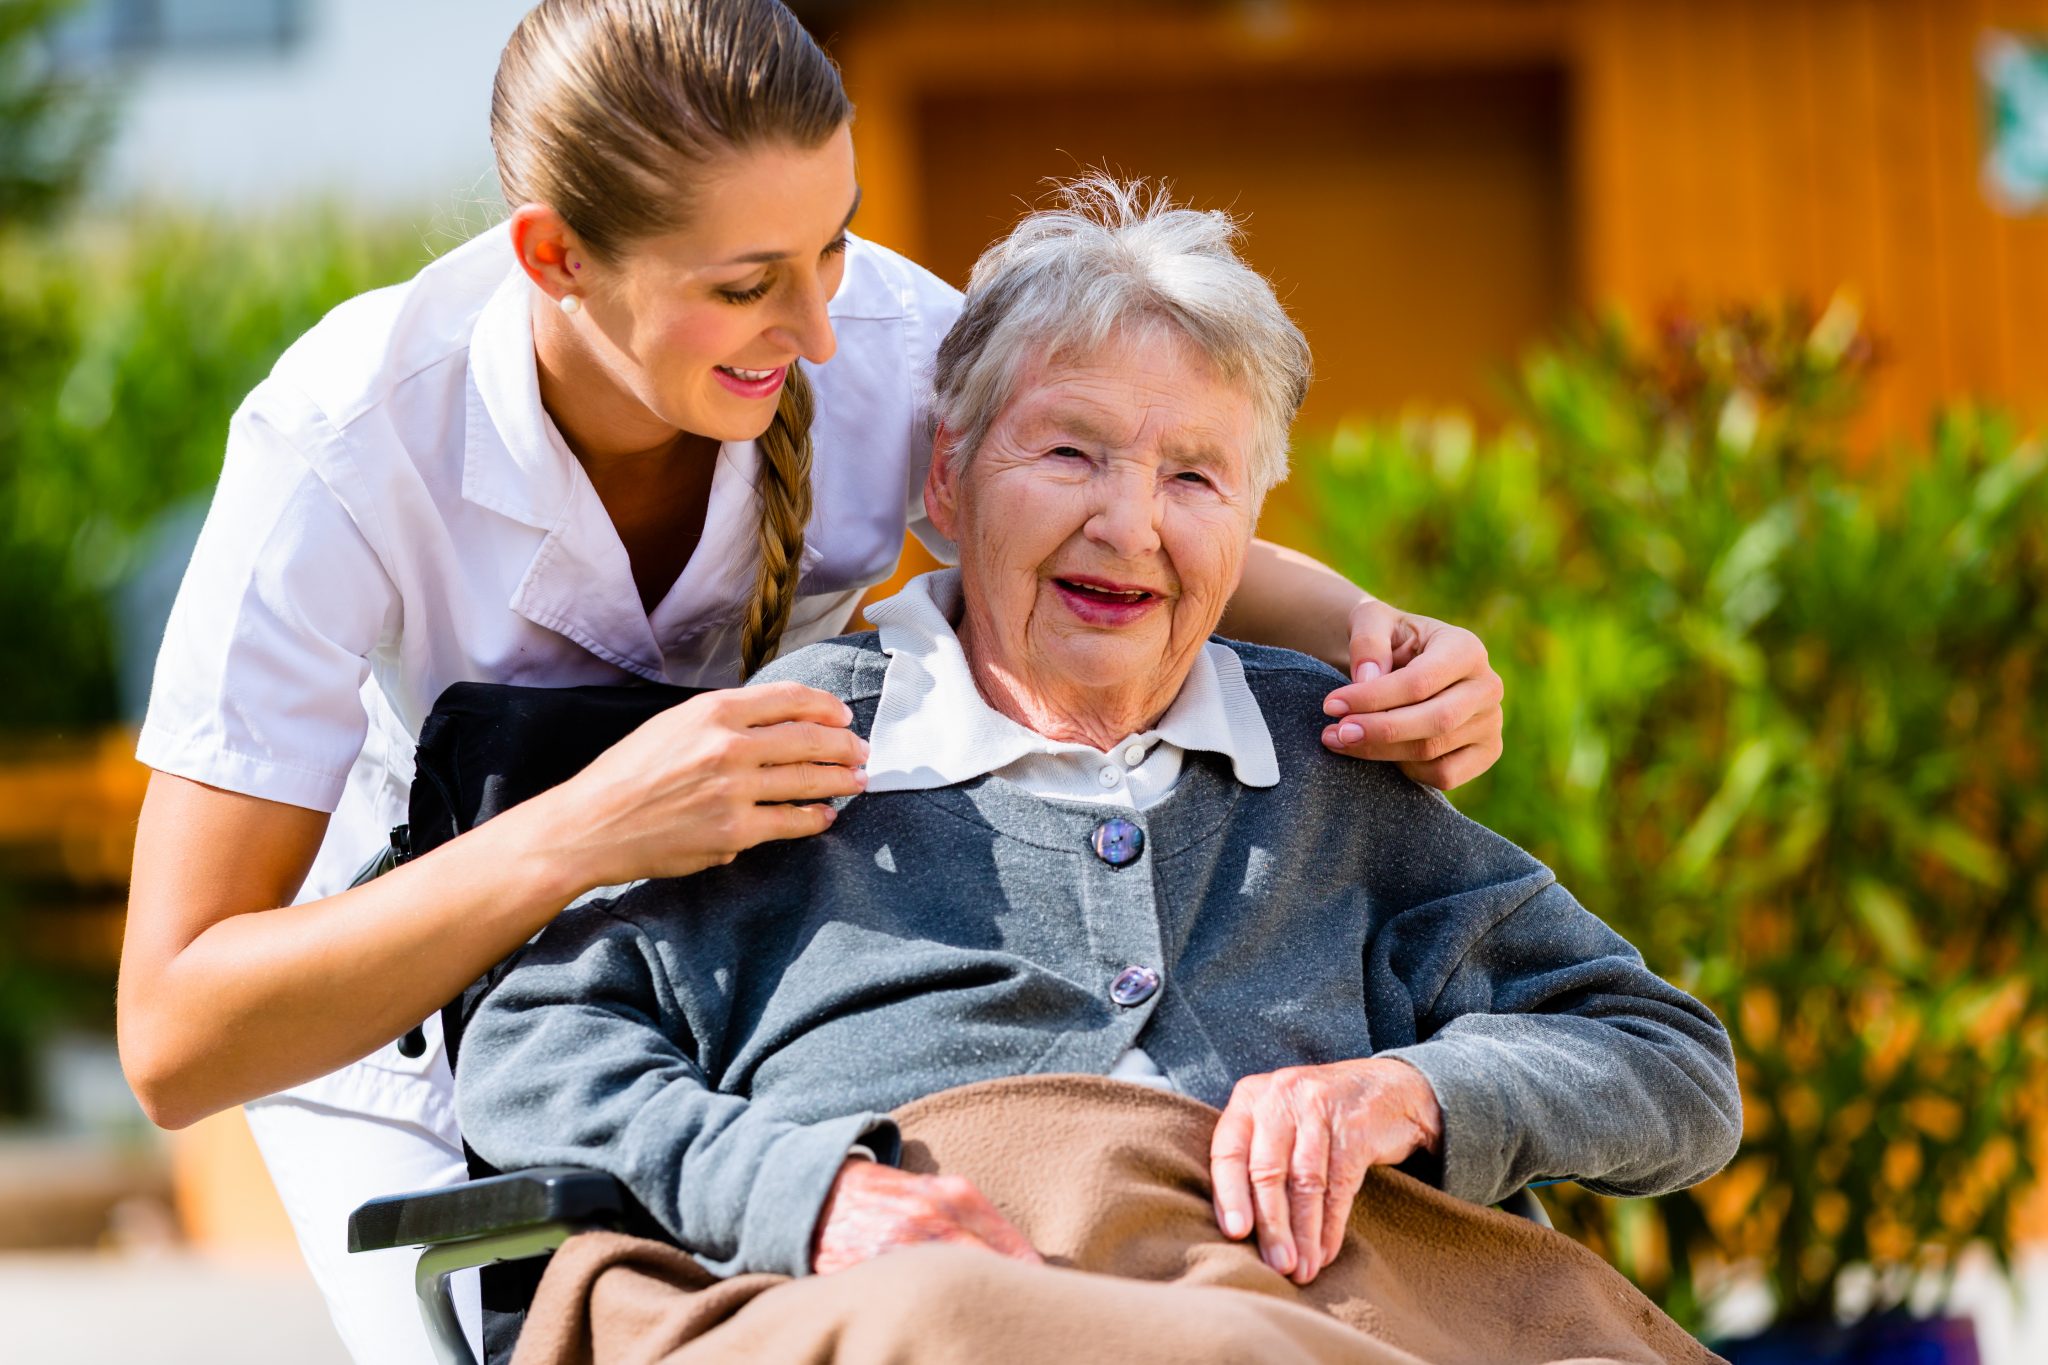 home-care-a-good-option-for-seniors